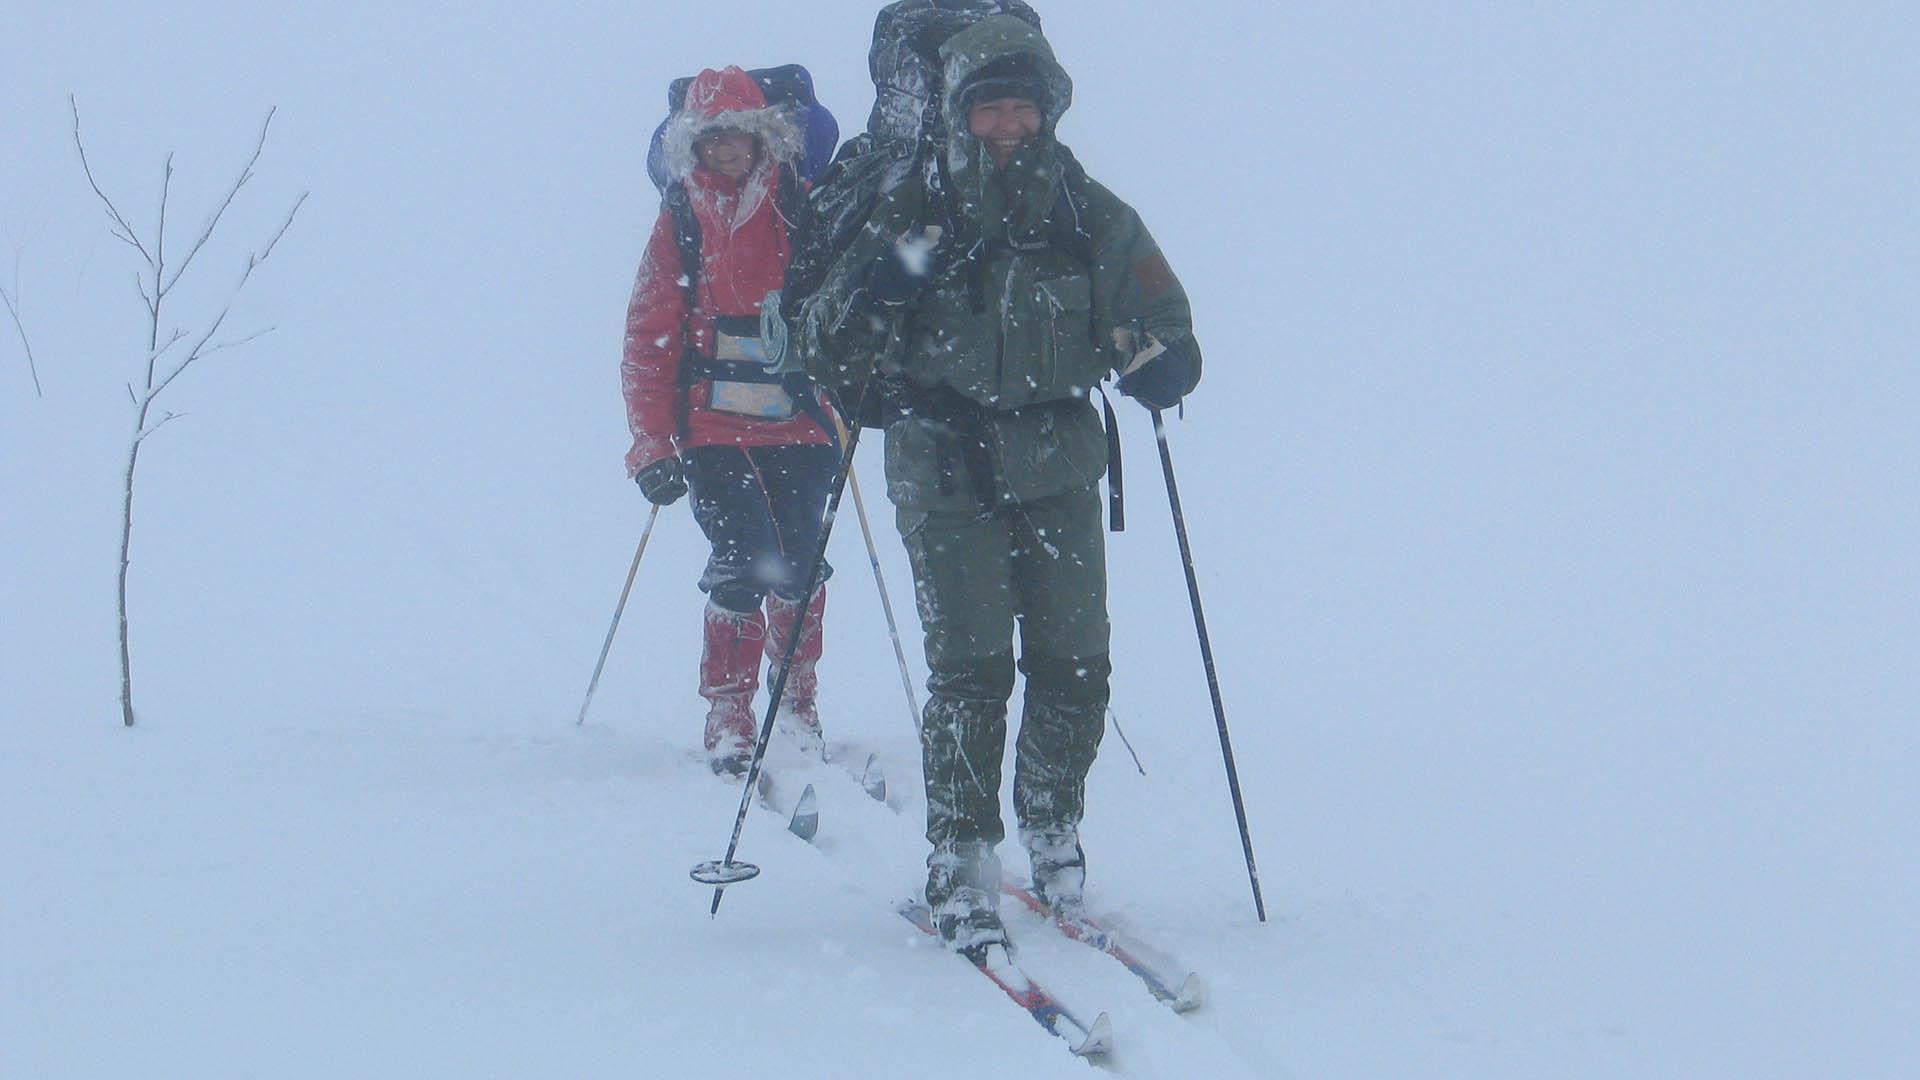 Zwei Back-country Skiläufer entlang einer markierten Route in totalem White-out. Nur die Markierung, die sie gerade passieren, ist sichtbar.